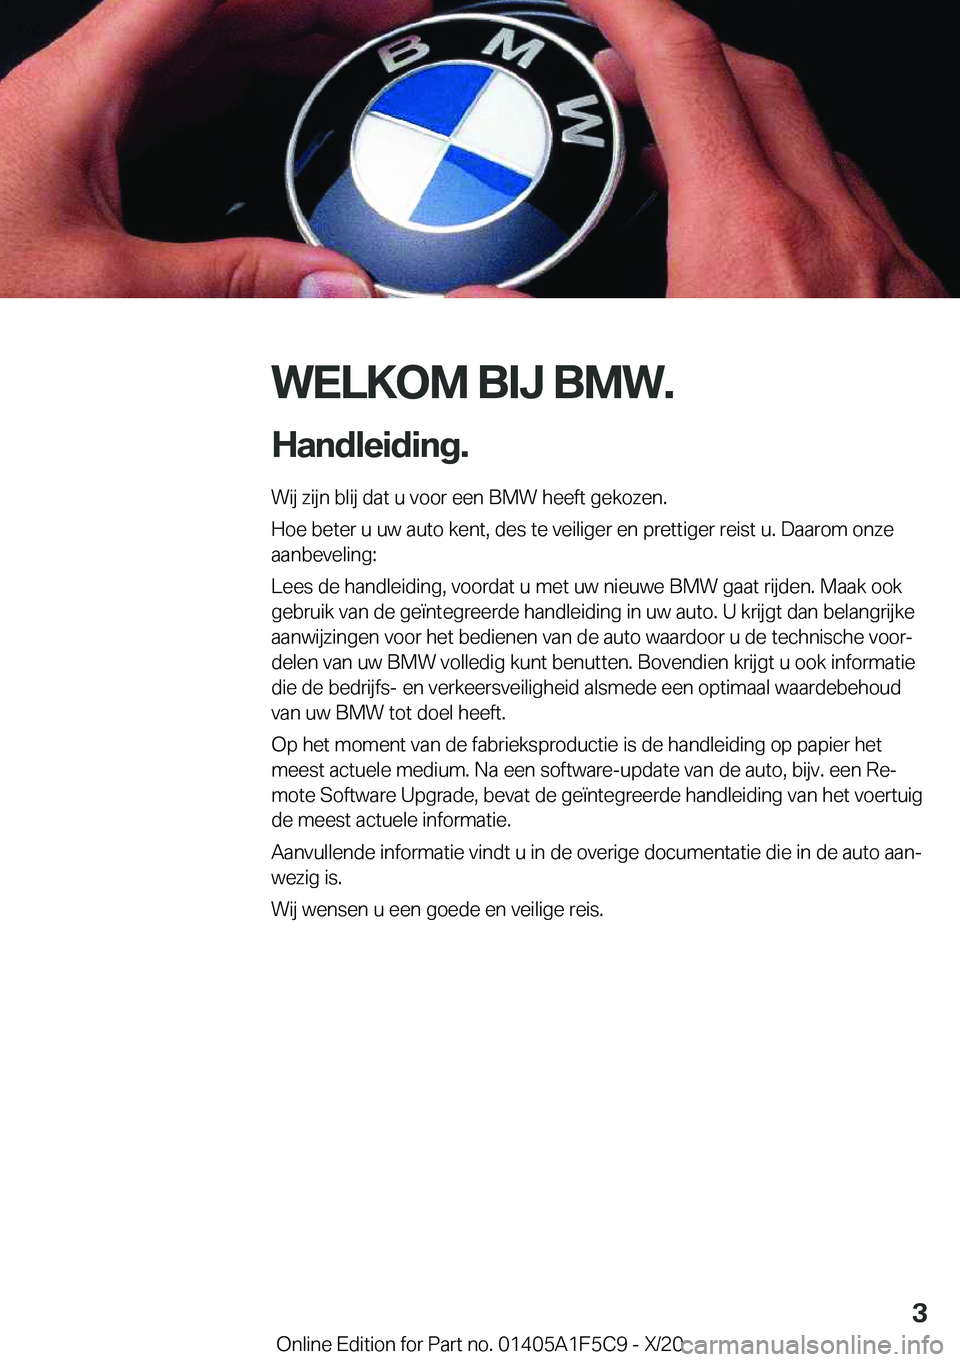 BMW X4 M 2021  Instructieboekjes (in Dutch) �W�E�L�K�O�M��B�I�J��B�M�W�.
�H�a�n�d�l�e�i�d�i�n�g�. �W�i�j��z�i�j�n��b�l�i�j��d�a�t��u��v�o�o�r��e�e�n��B�M�W��h�e�e�f�t��g�e�k�o�z�e�n�.
�H�o�e��b�e�t�e�r��u��u�w��a�u�t�o��k�e�n�t�